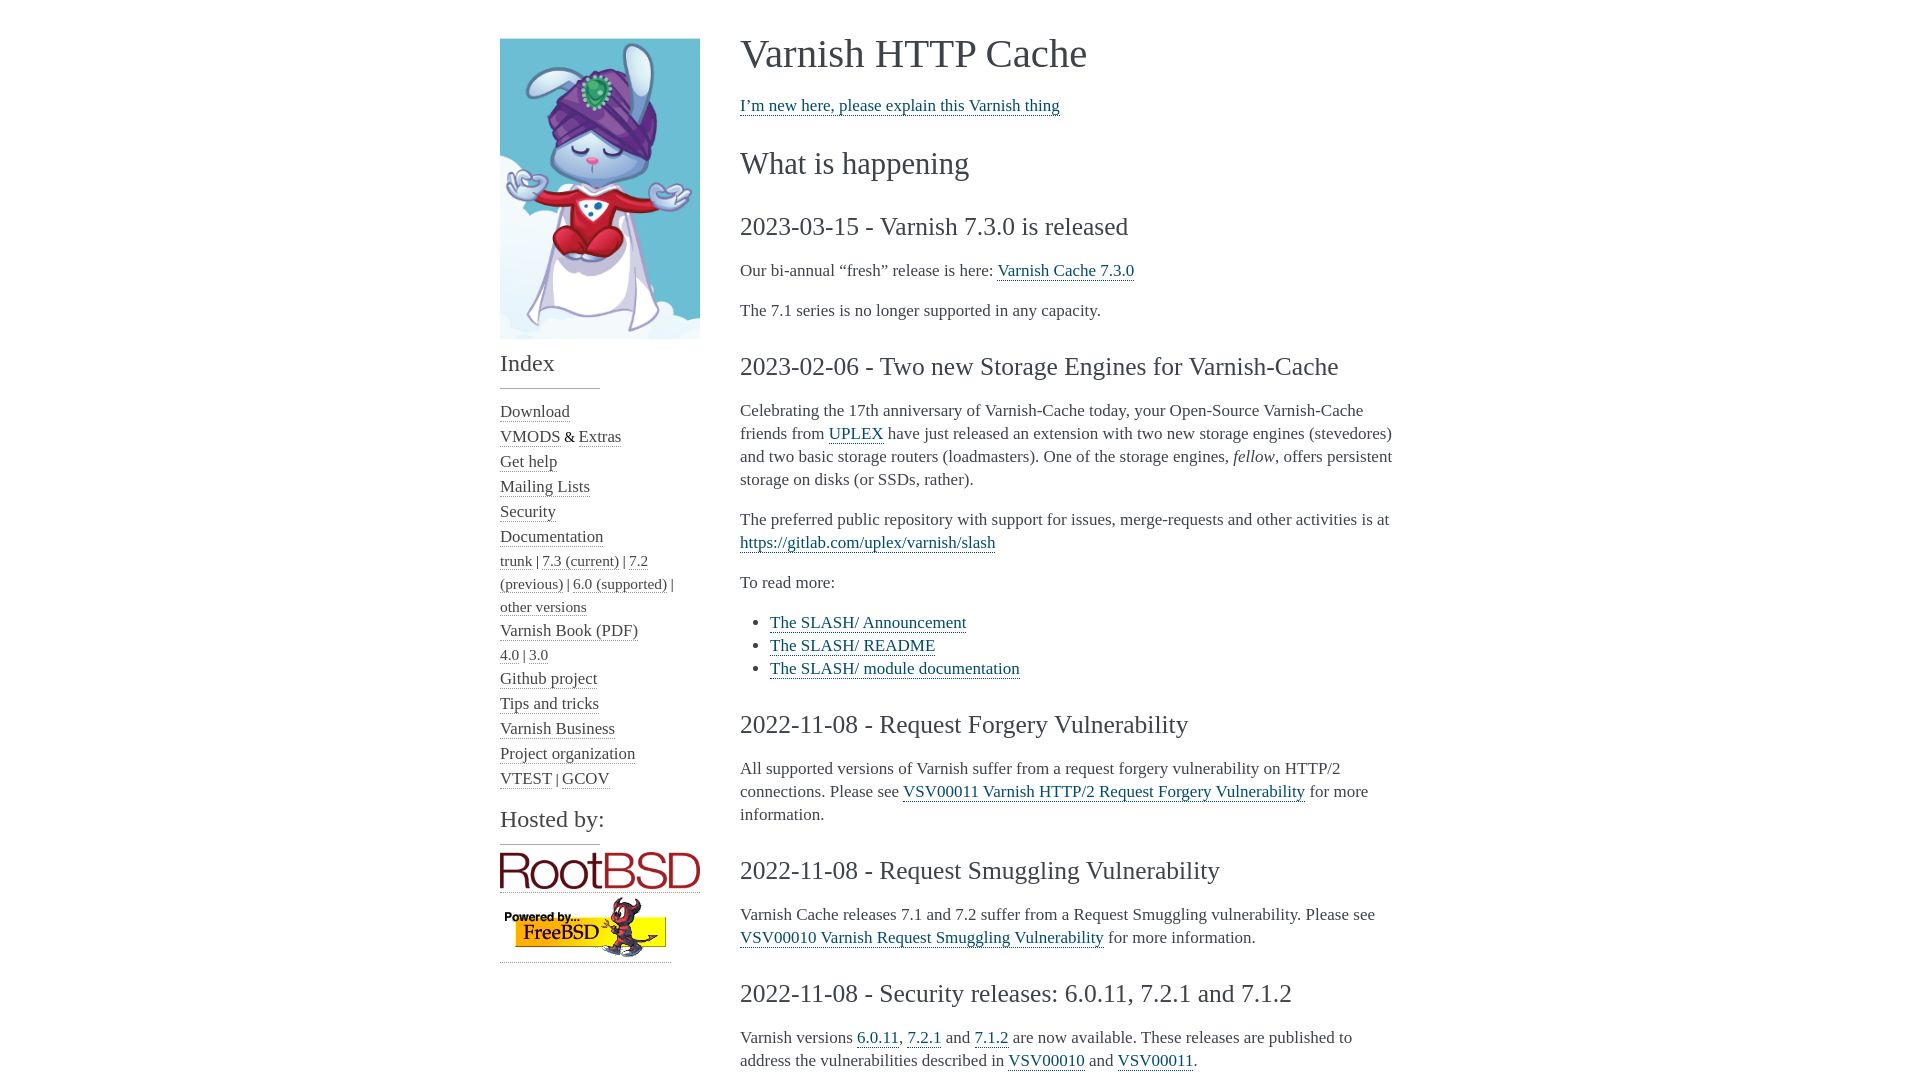 Estado web varnish-cache.org está   ONLINE